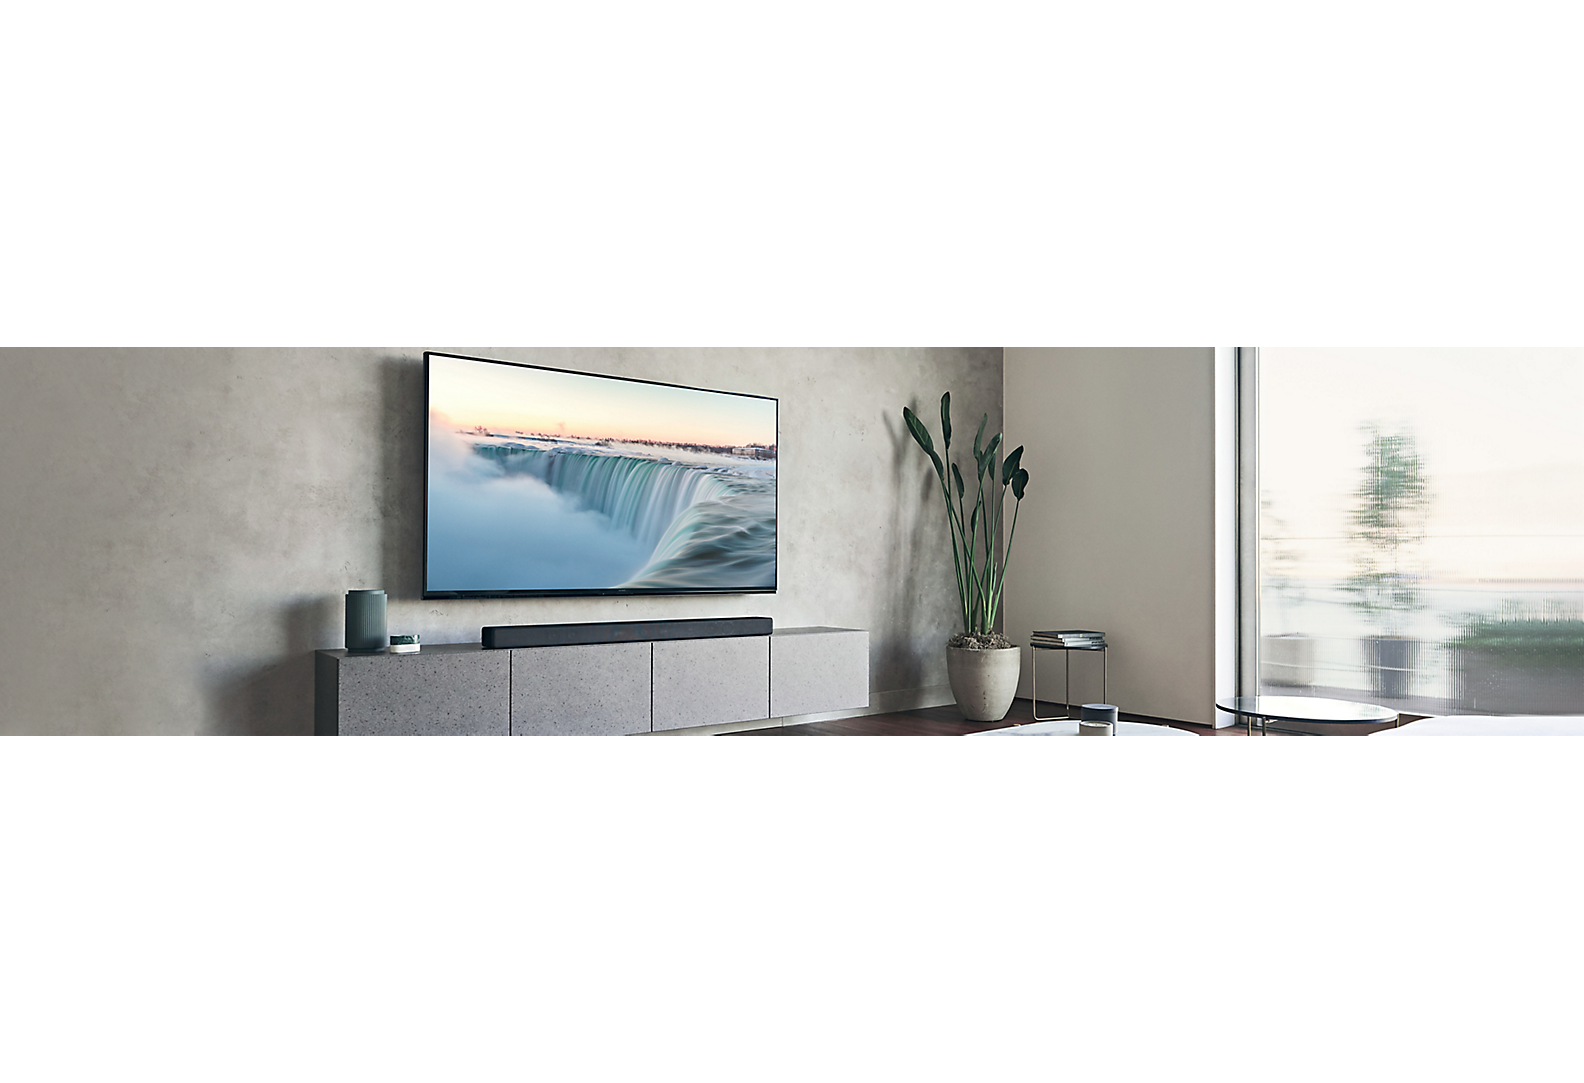 An einer grauen Wand angebrachter Fernseher in einem grau gehaltenen Wohnzimmer mit verschiedenen Dekorgegenständen.